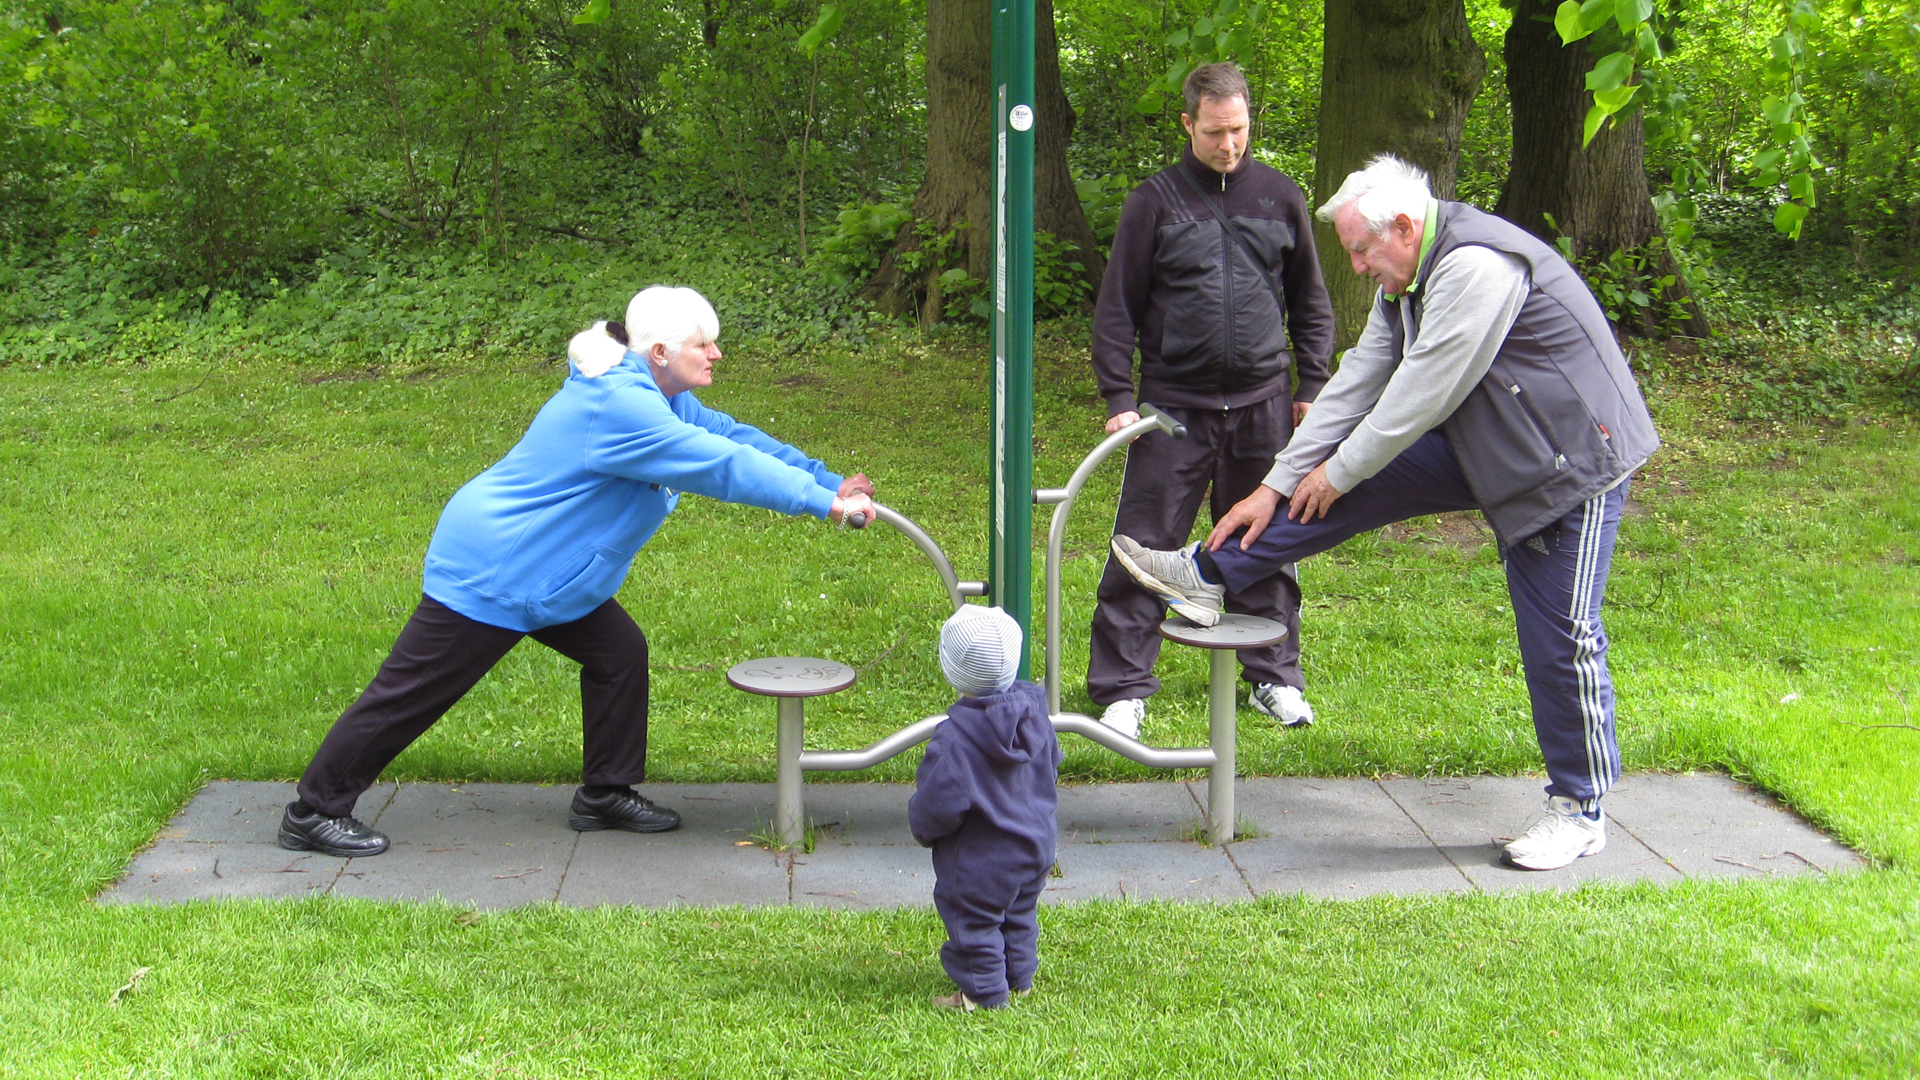 An einem Outdoor-Fitnessgerät in einer Rasenfläche trainieren eine ältere Frau und ein älterer mann. Ein anderer Mann im Trainingsanzug schaut zu, ebenso ein kleines Kind